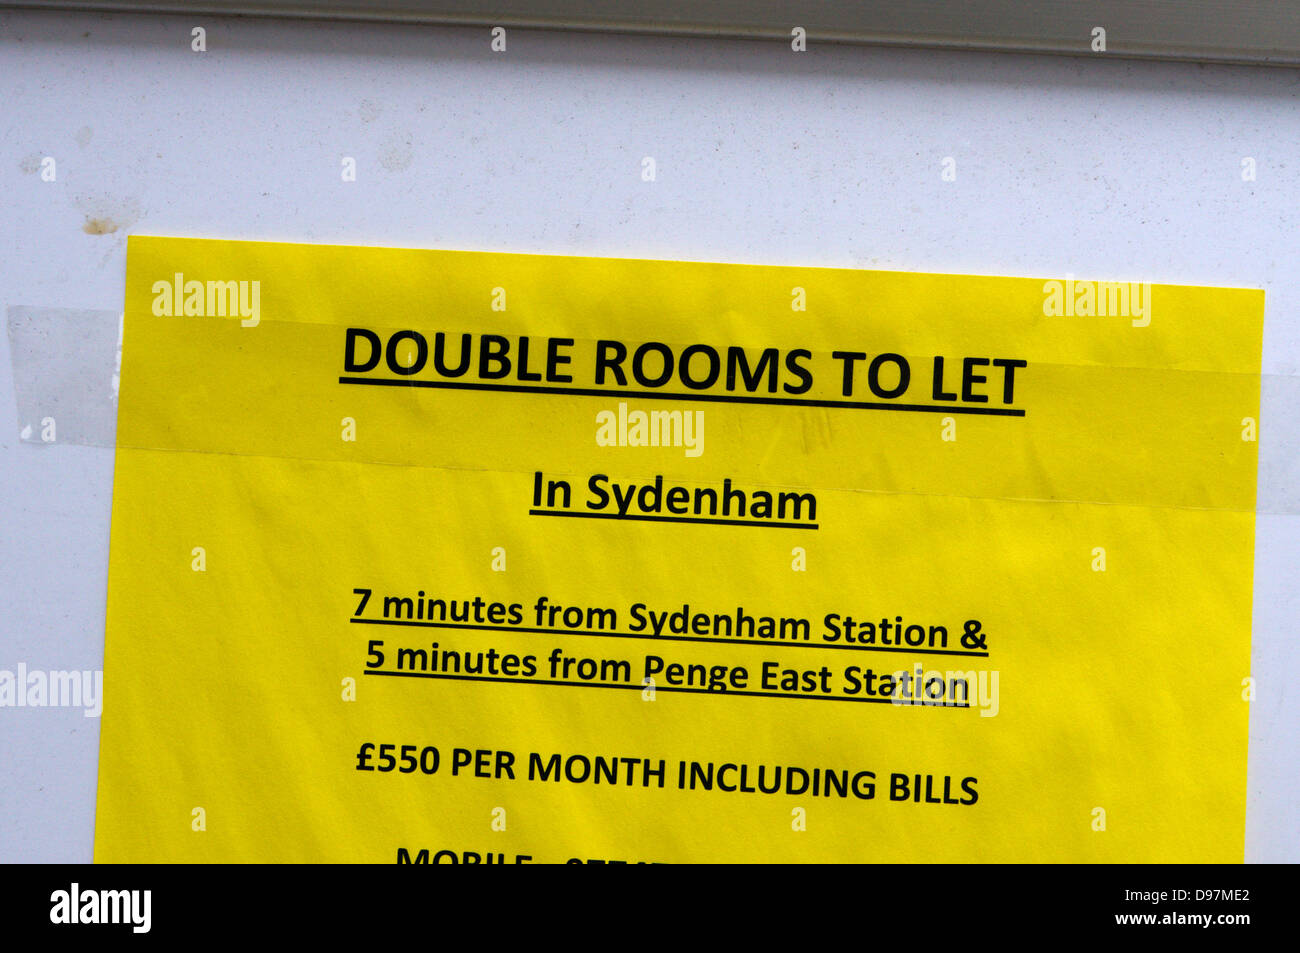 Ein Zeichen für Doppel Zimmer zu vermieten in Süd-London. Stockfoto